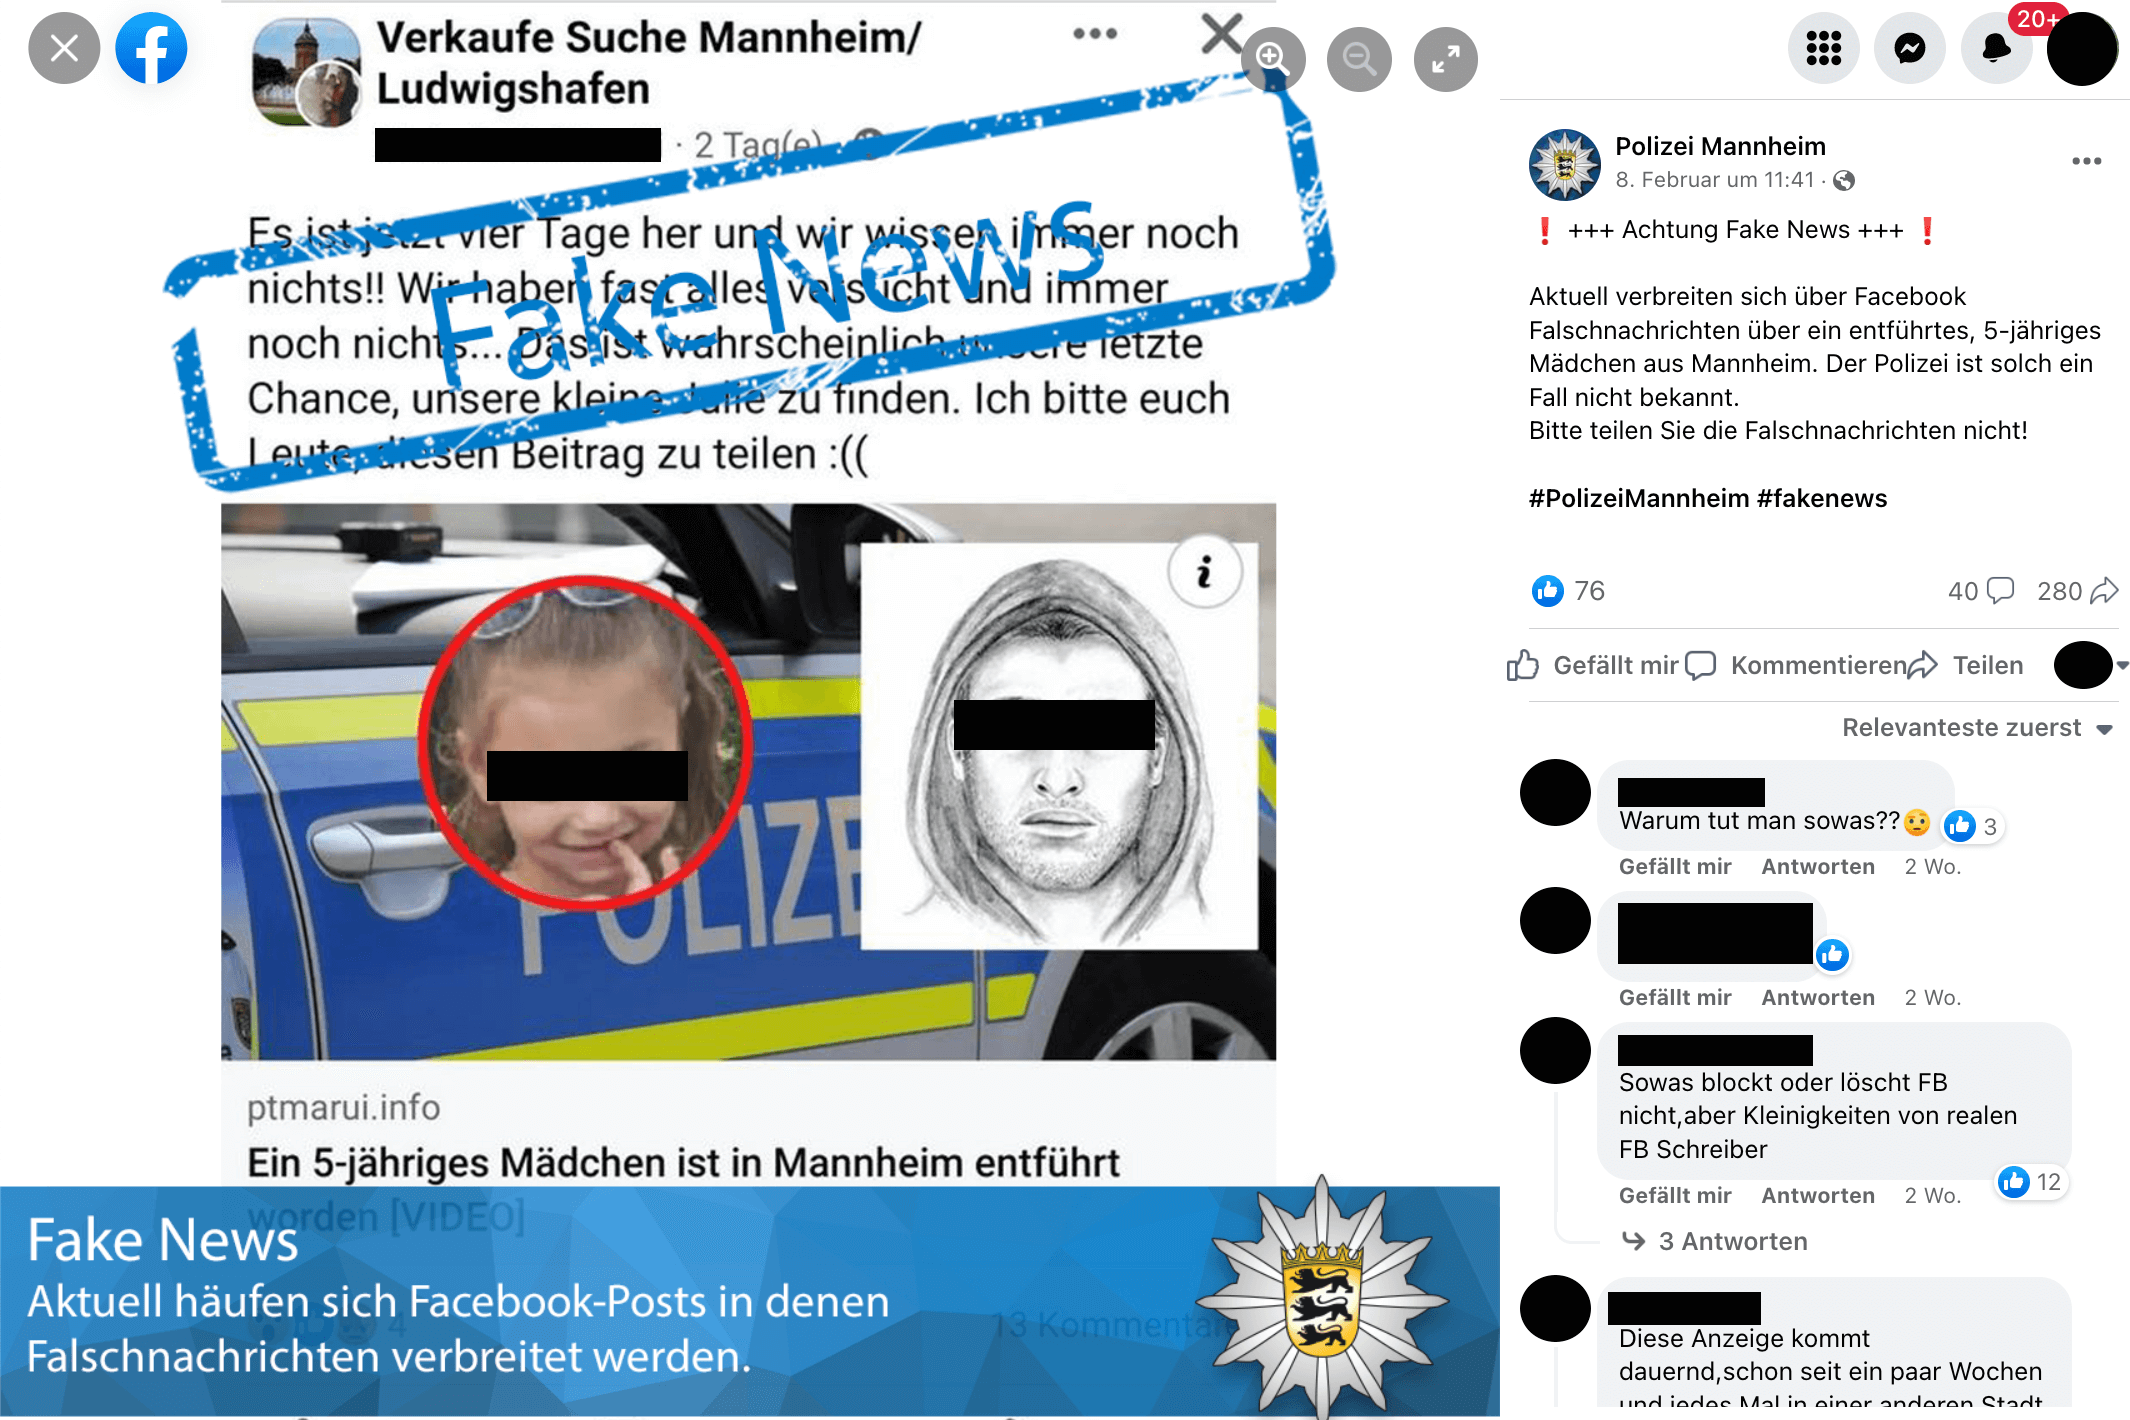 Polizei Mannheim warnt vor Facebook-Falschmeldung